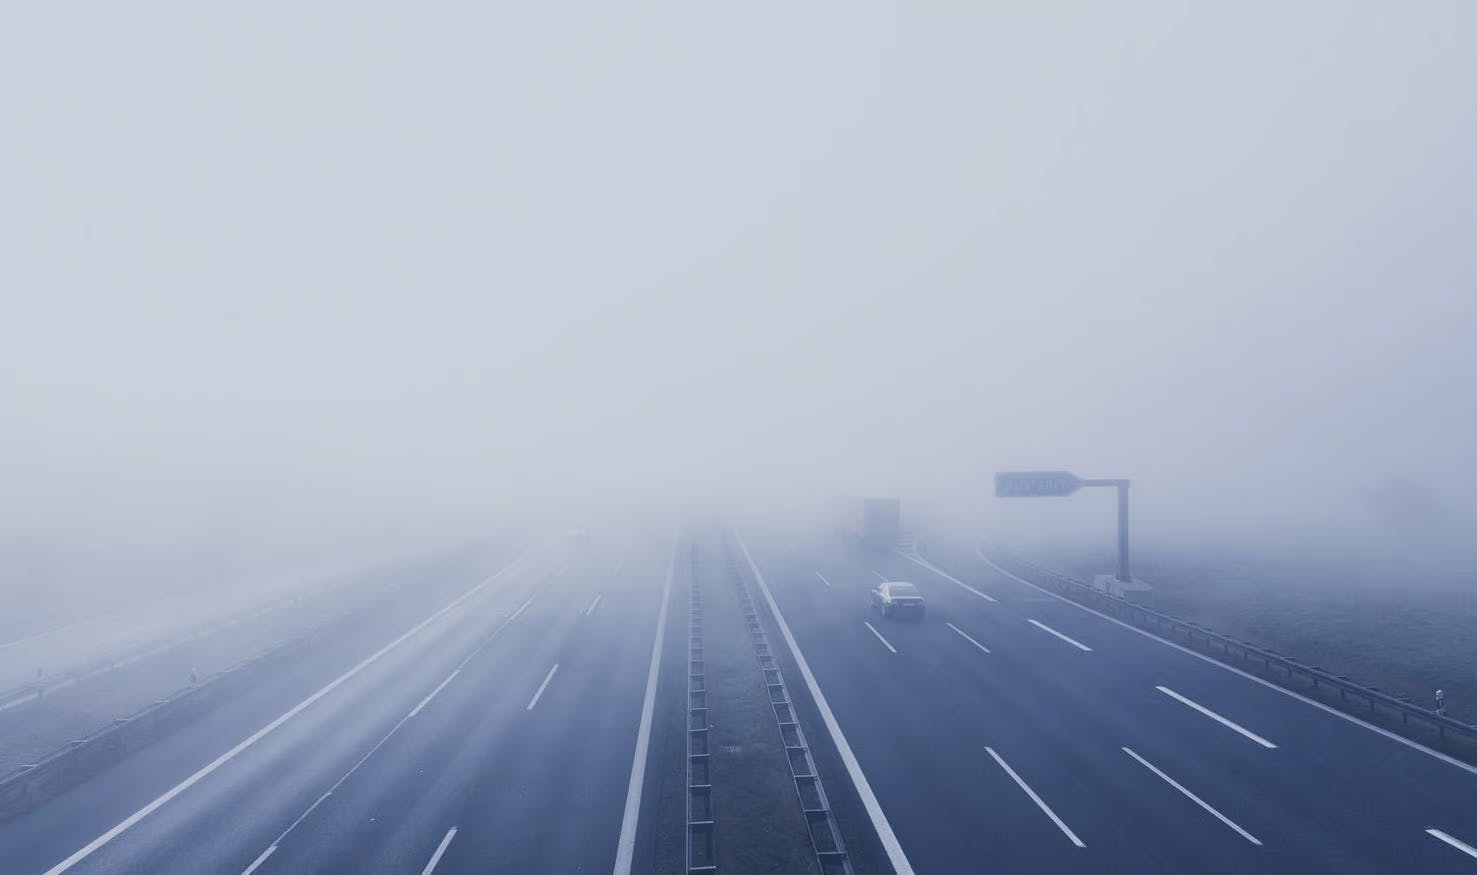 A foggy motorway